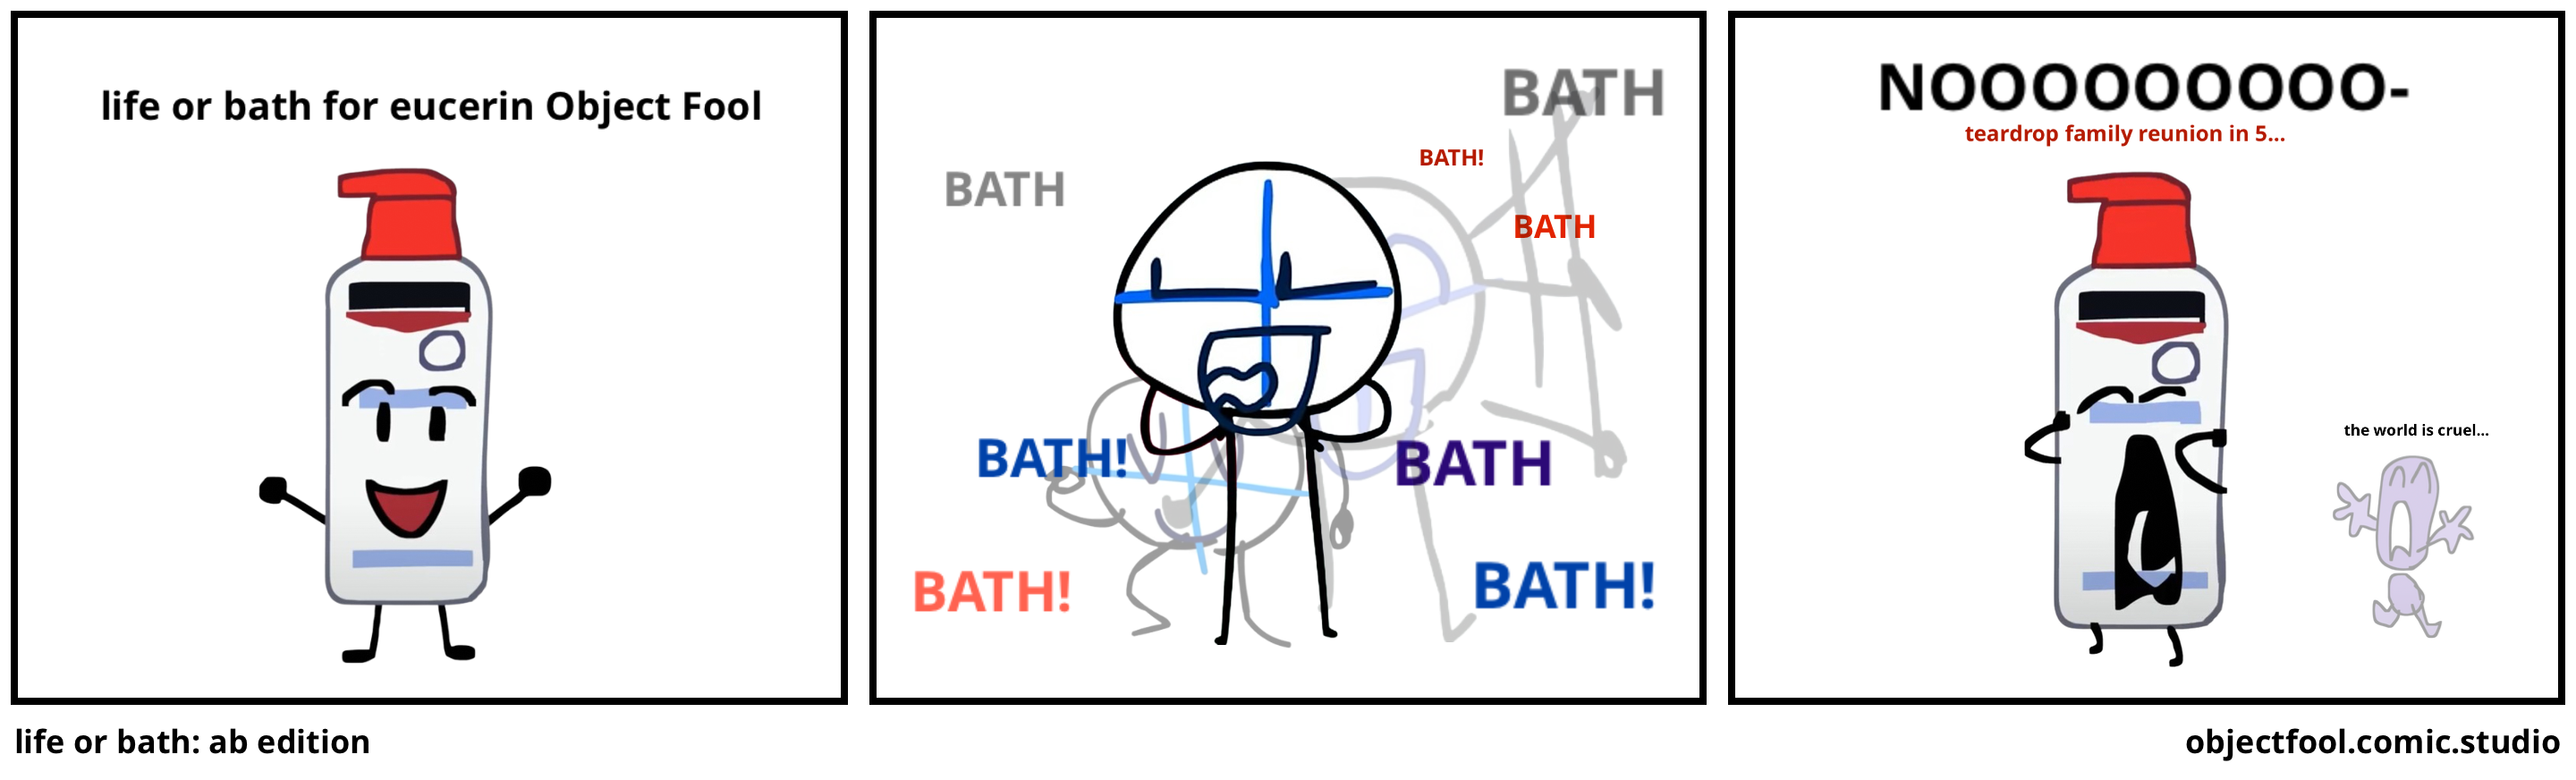 life or bath: ab edition